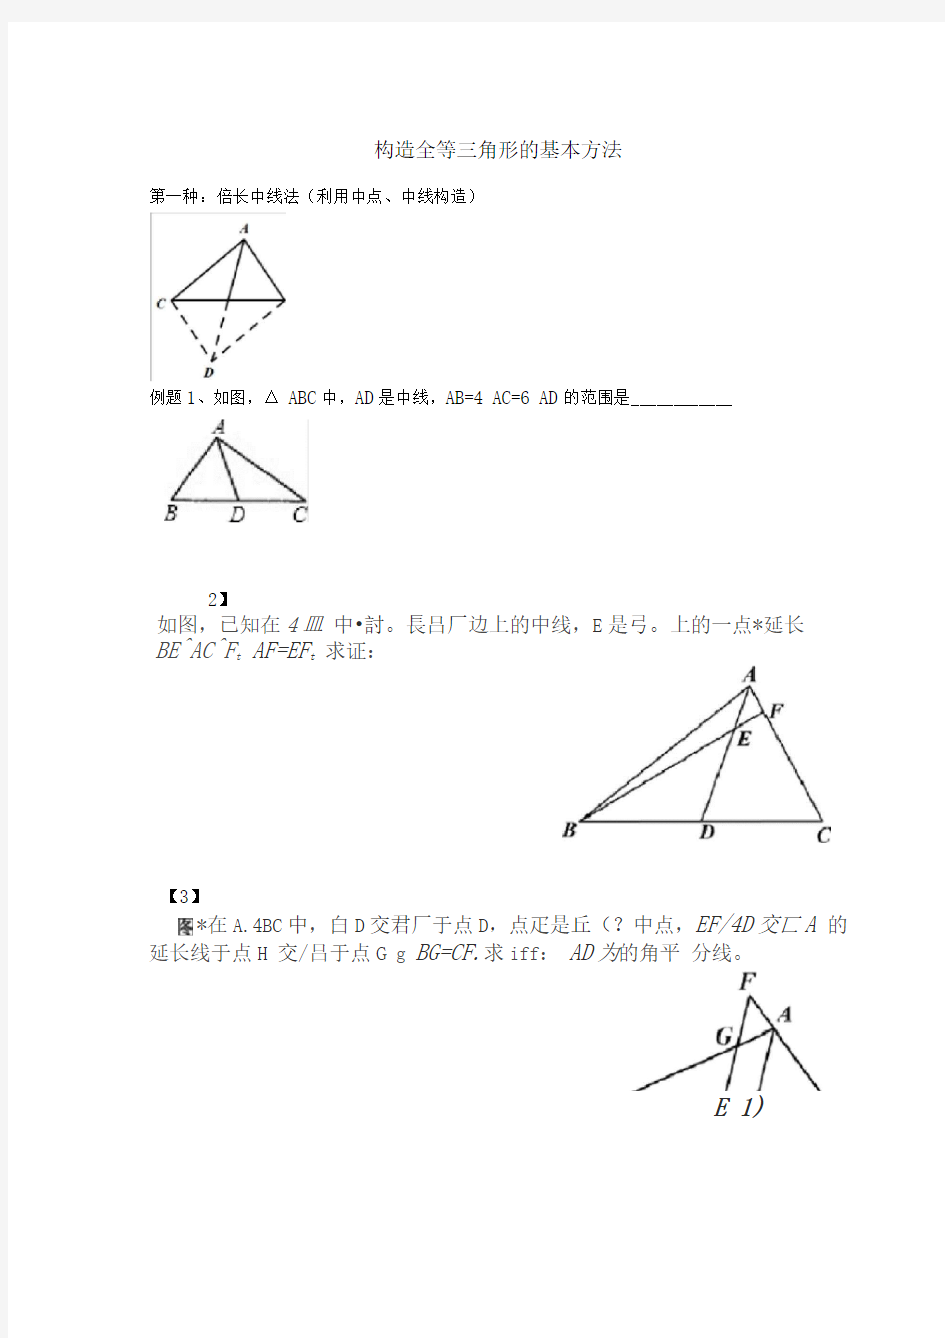 构造全等三角形的基本方法